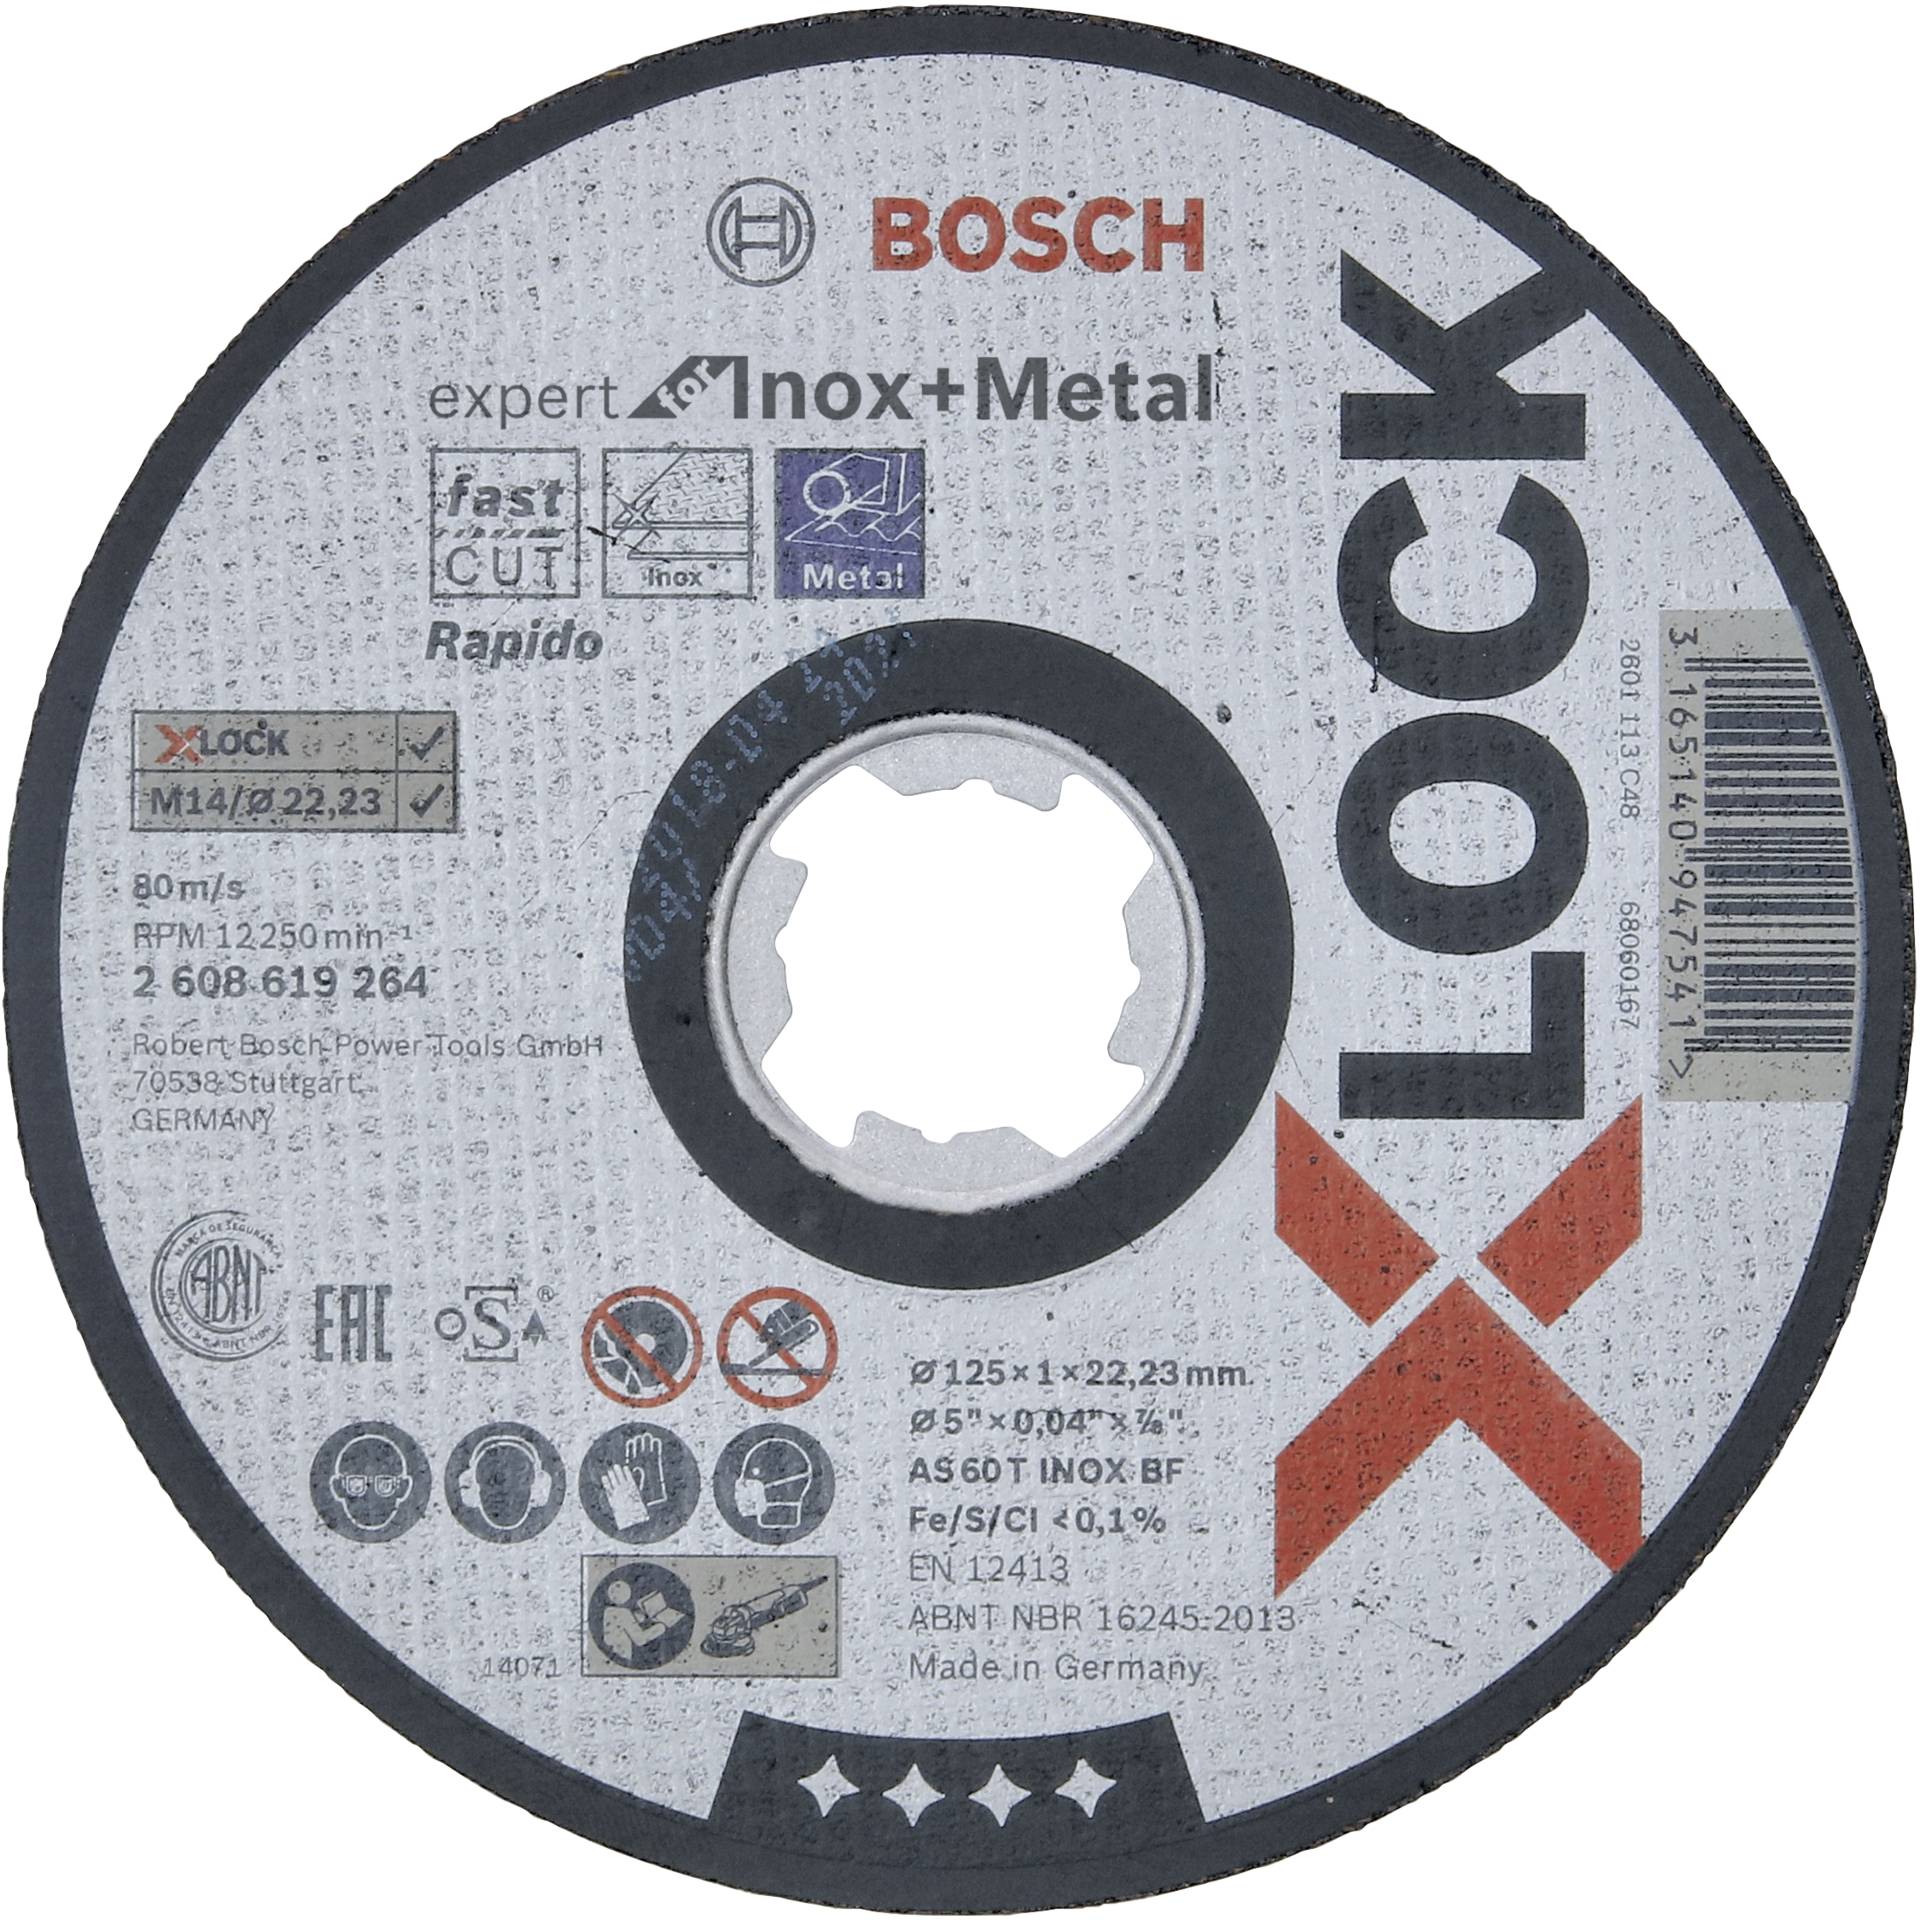 Bosch 2 608 619 264 Winkelschleifer-Zubehör Schneidedisk